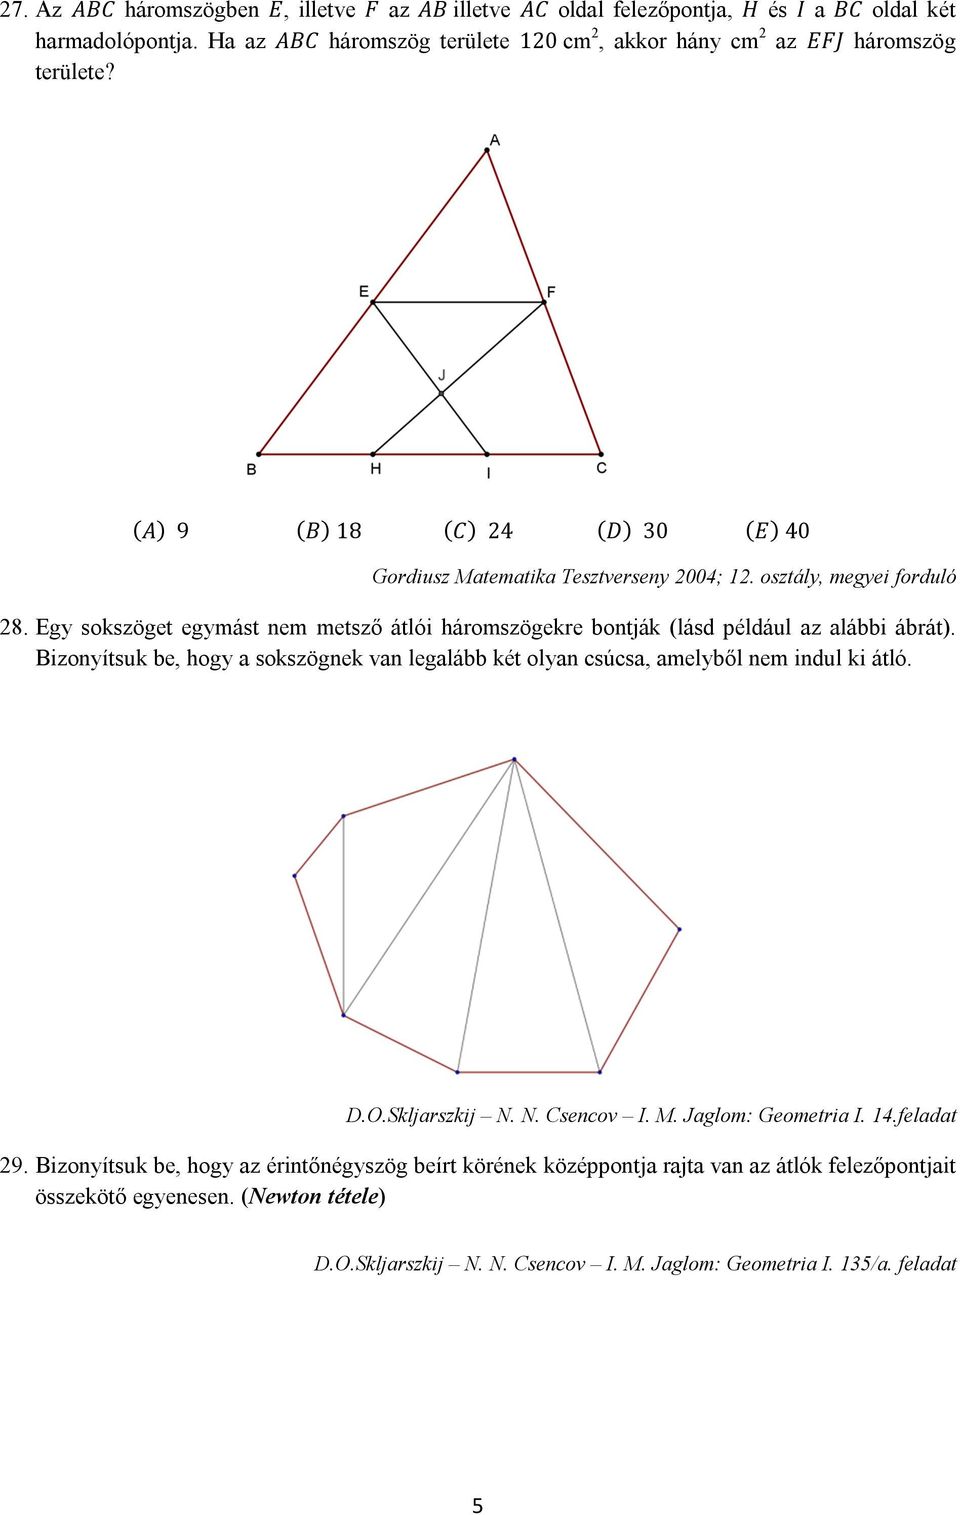 Egy sokszöget egymást nem metsző átlói háromszögekre bontják (lásd például az alábbi ábrát). Bizonyítsuk be, hogy a sokszögnek van legalább két olyan csúcsa, amelyből nem indul ki átló. D.O.